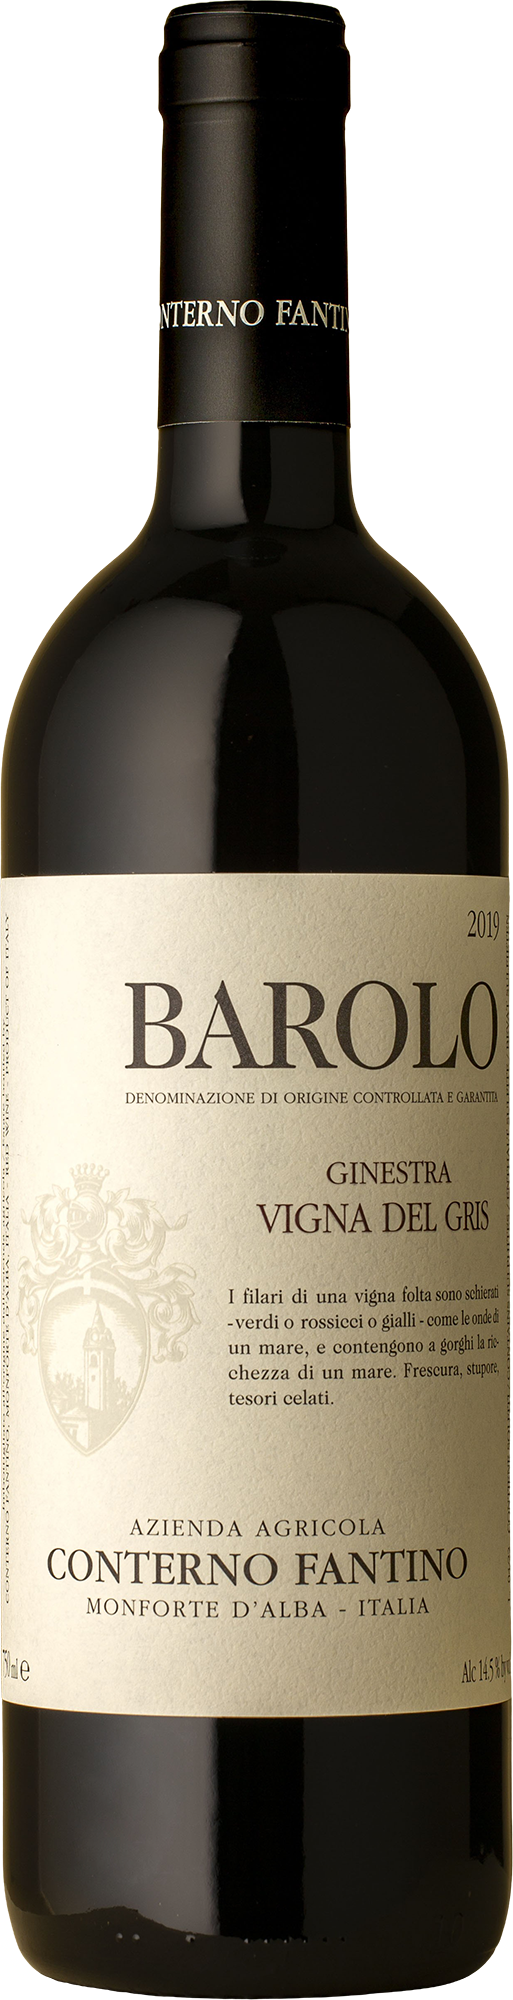 Conterno Fantino - Barolo Vigna del Gris Nebbiolo 2019 Red Wine